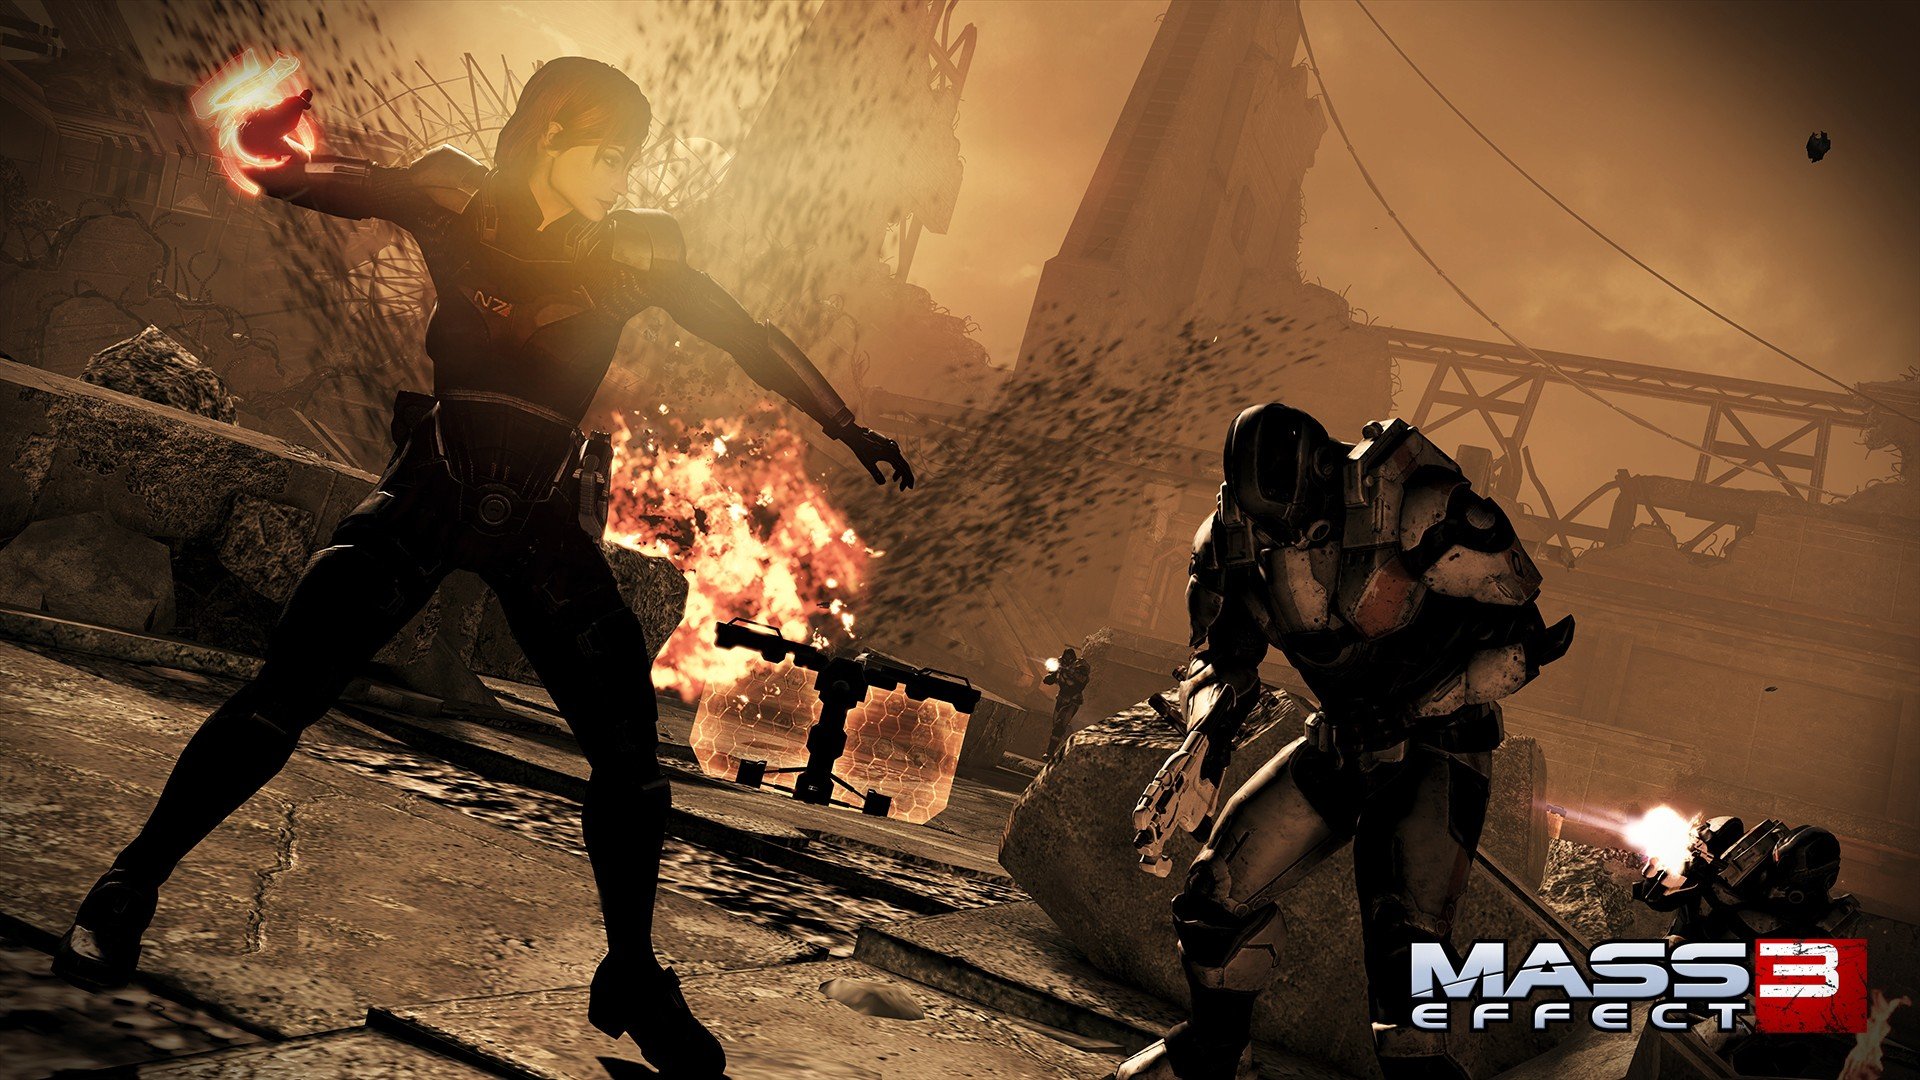 Video Games Mass Effect Femshep Wallpaper Background